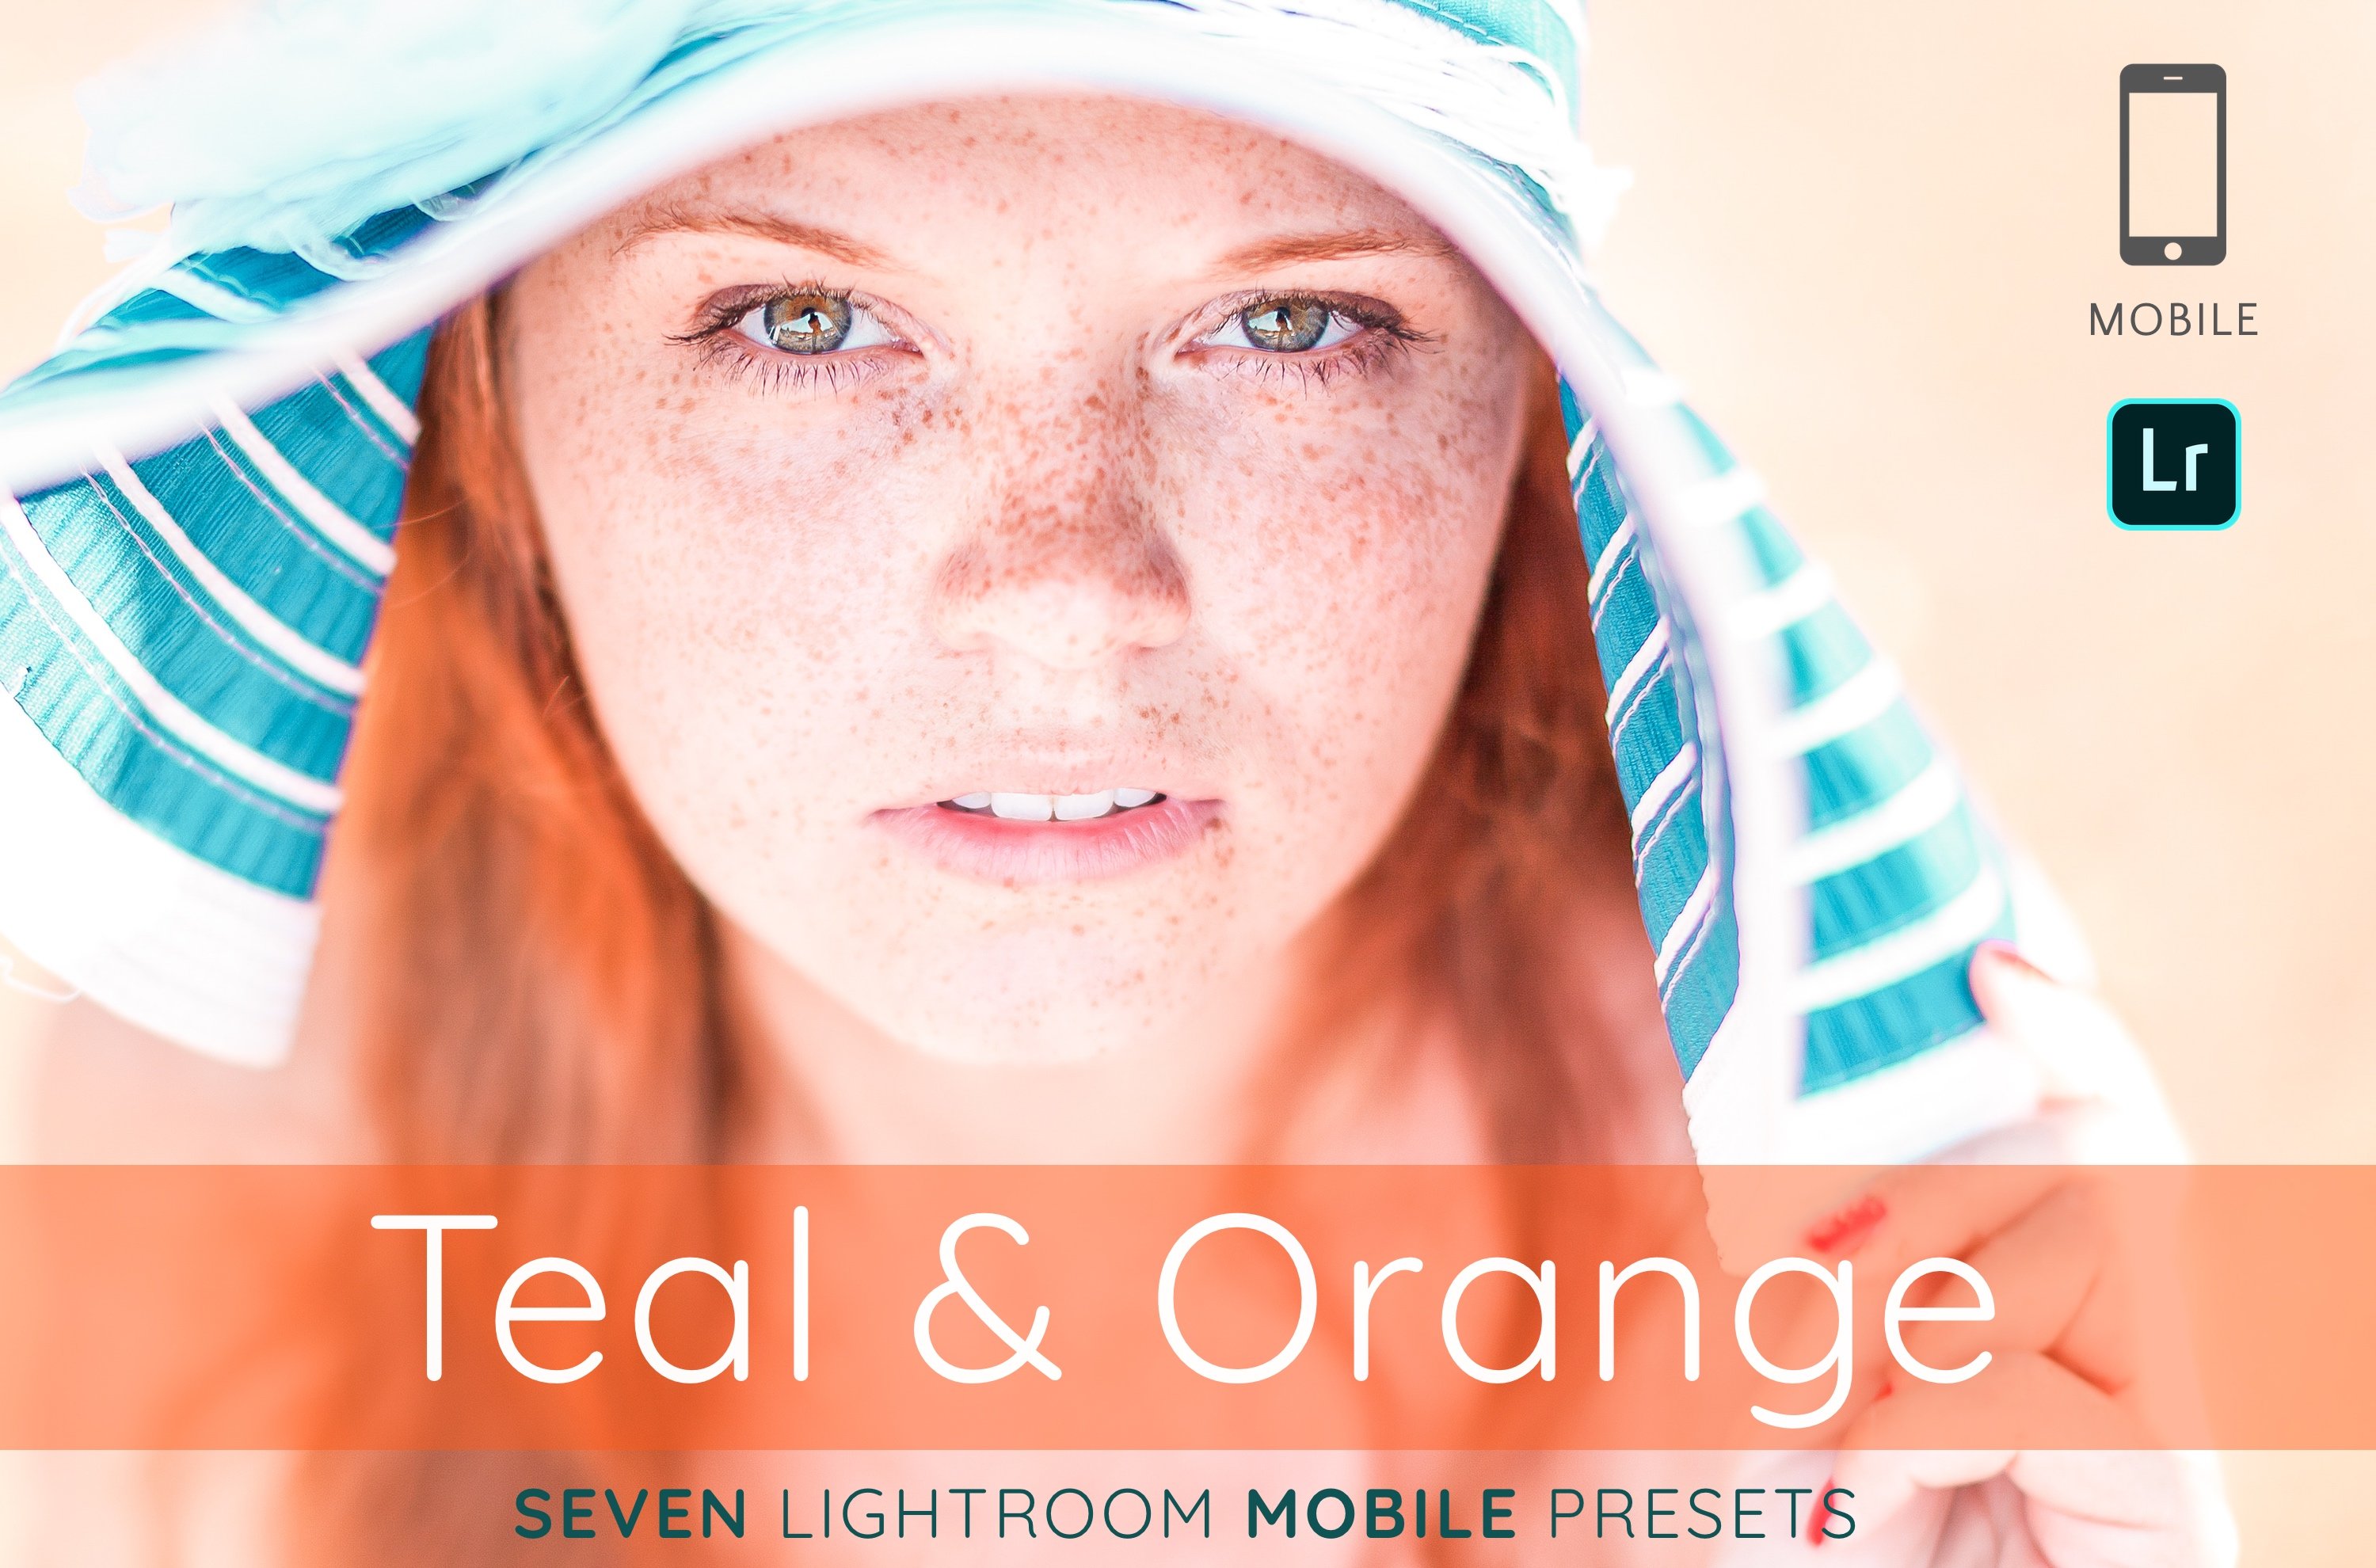 Teal Orange Lightroom mobile presetscover image.